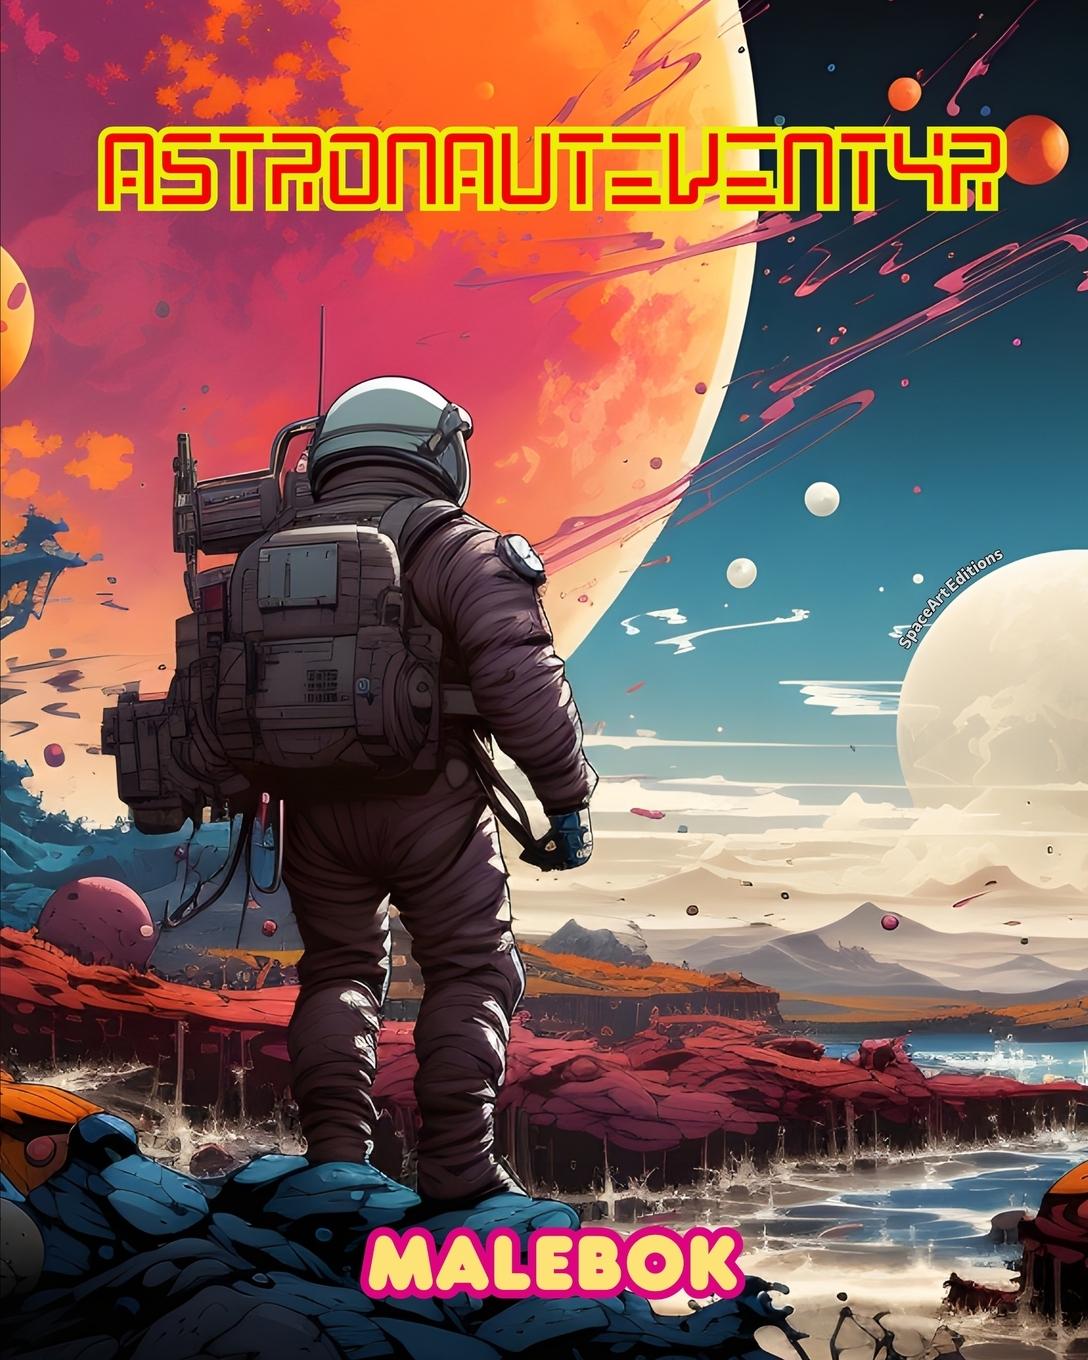 Knjiga Astronauteventyr - Malebok - Kunstnerisk samling av romfartsmotiver 